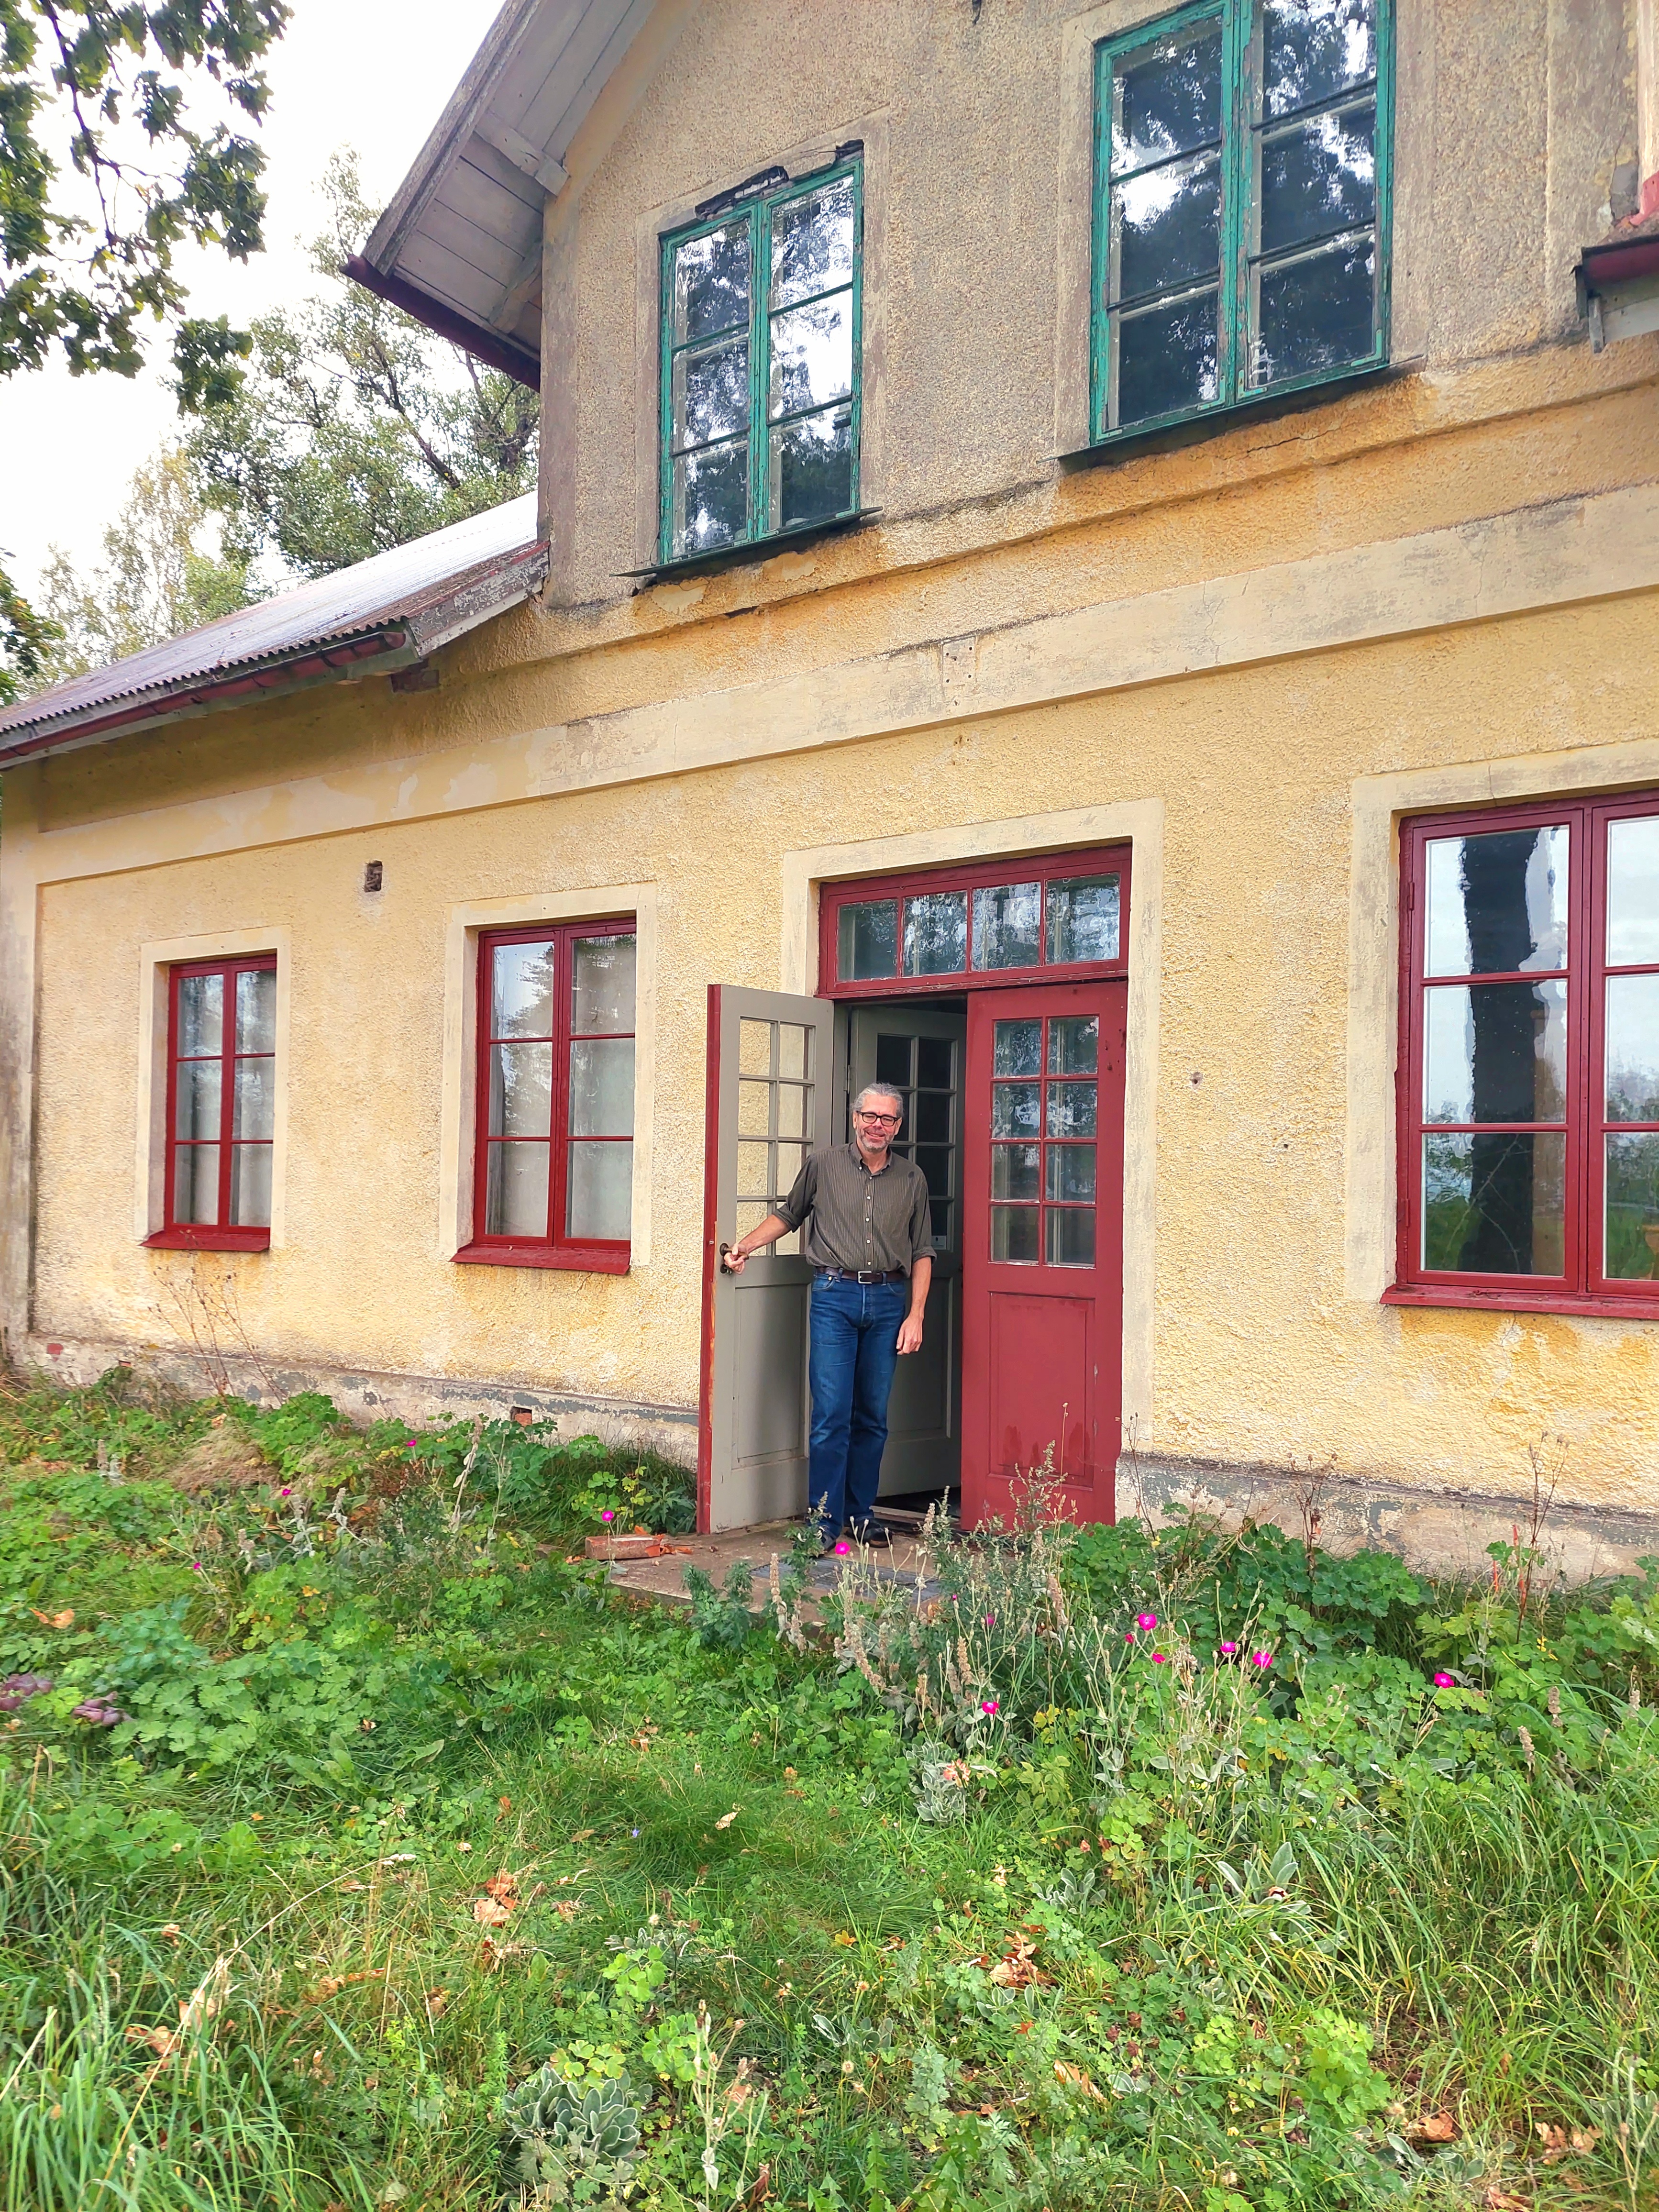 Yrkeshandvävaren Hans Thomsson har fått i uppdrag att återskapa matsalsduken till Löfstad slott. Här ses han utanför det gamla mejeriet som han bor och arbetar i.